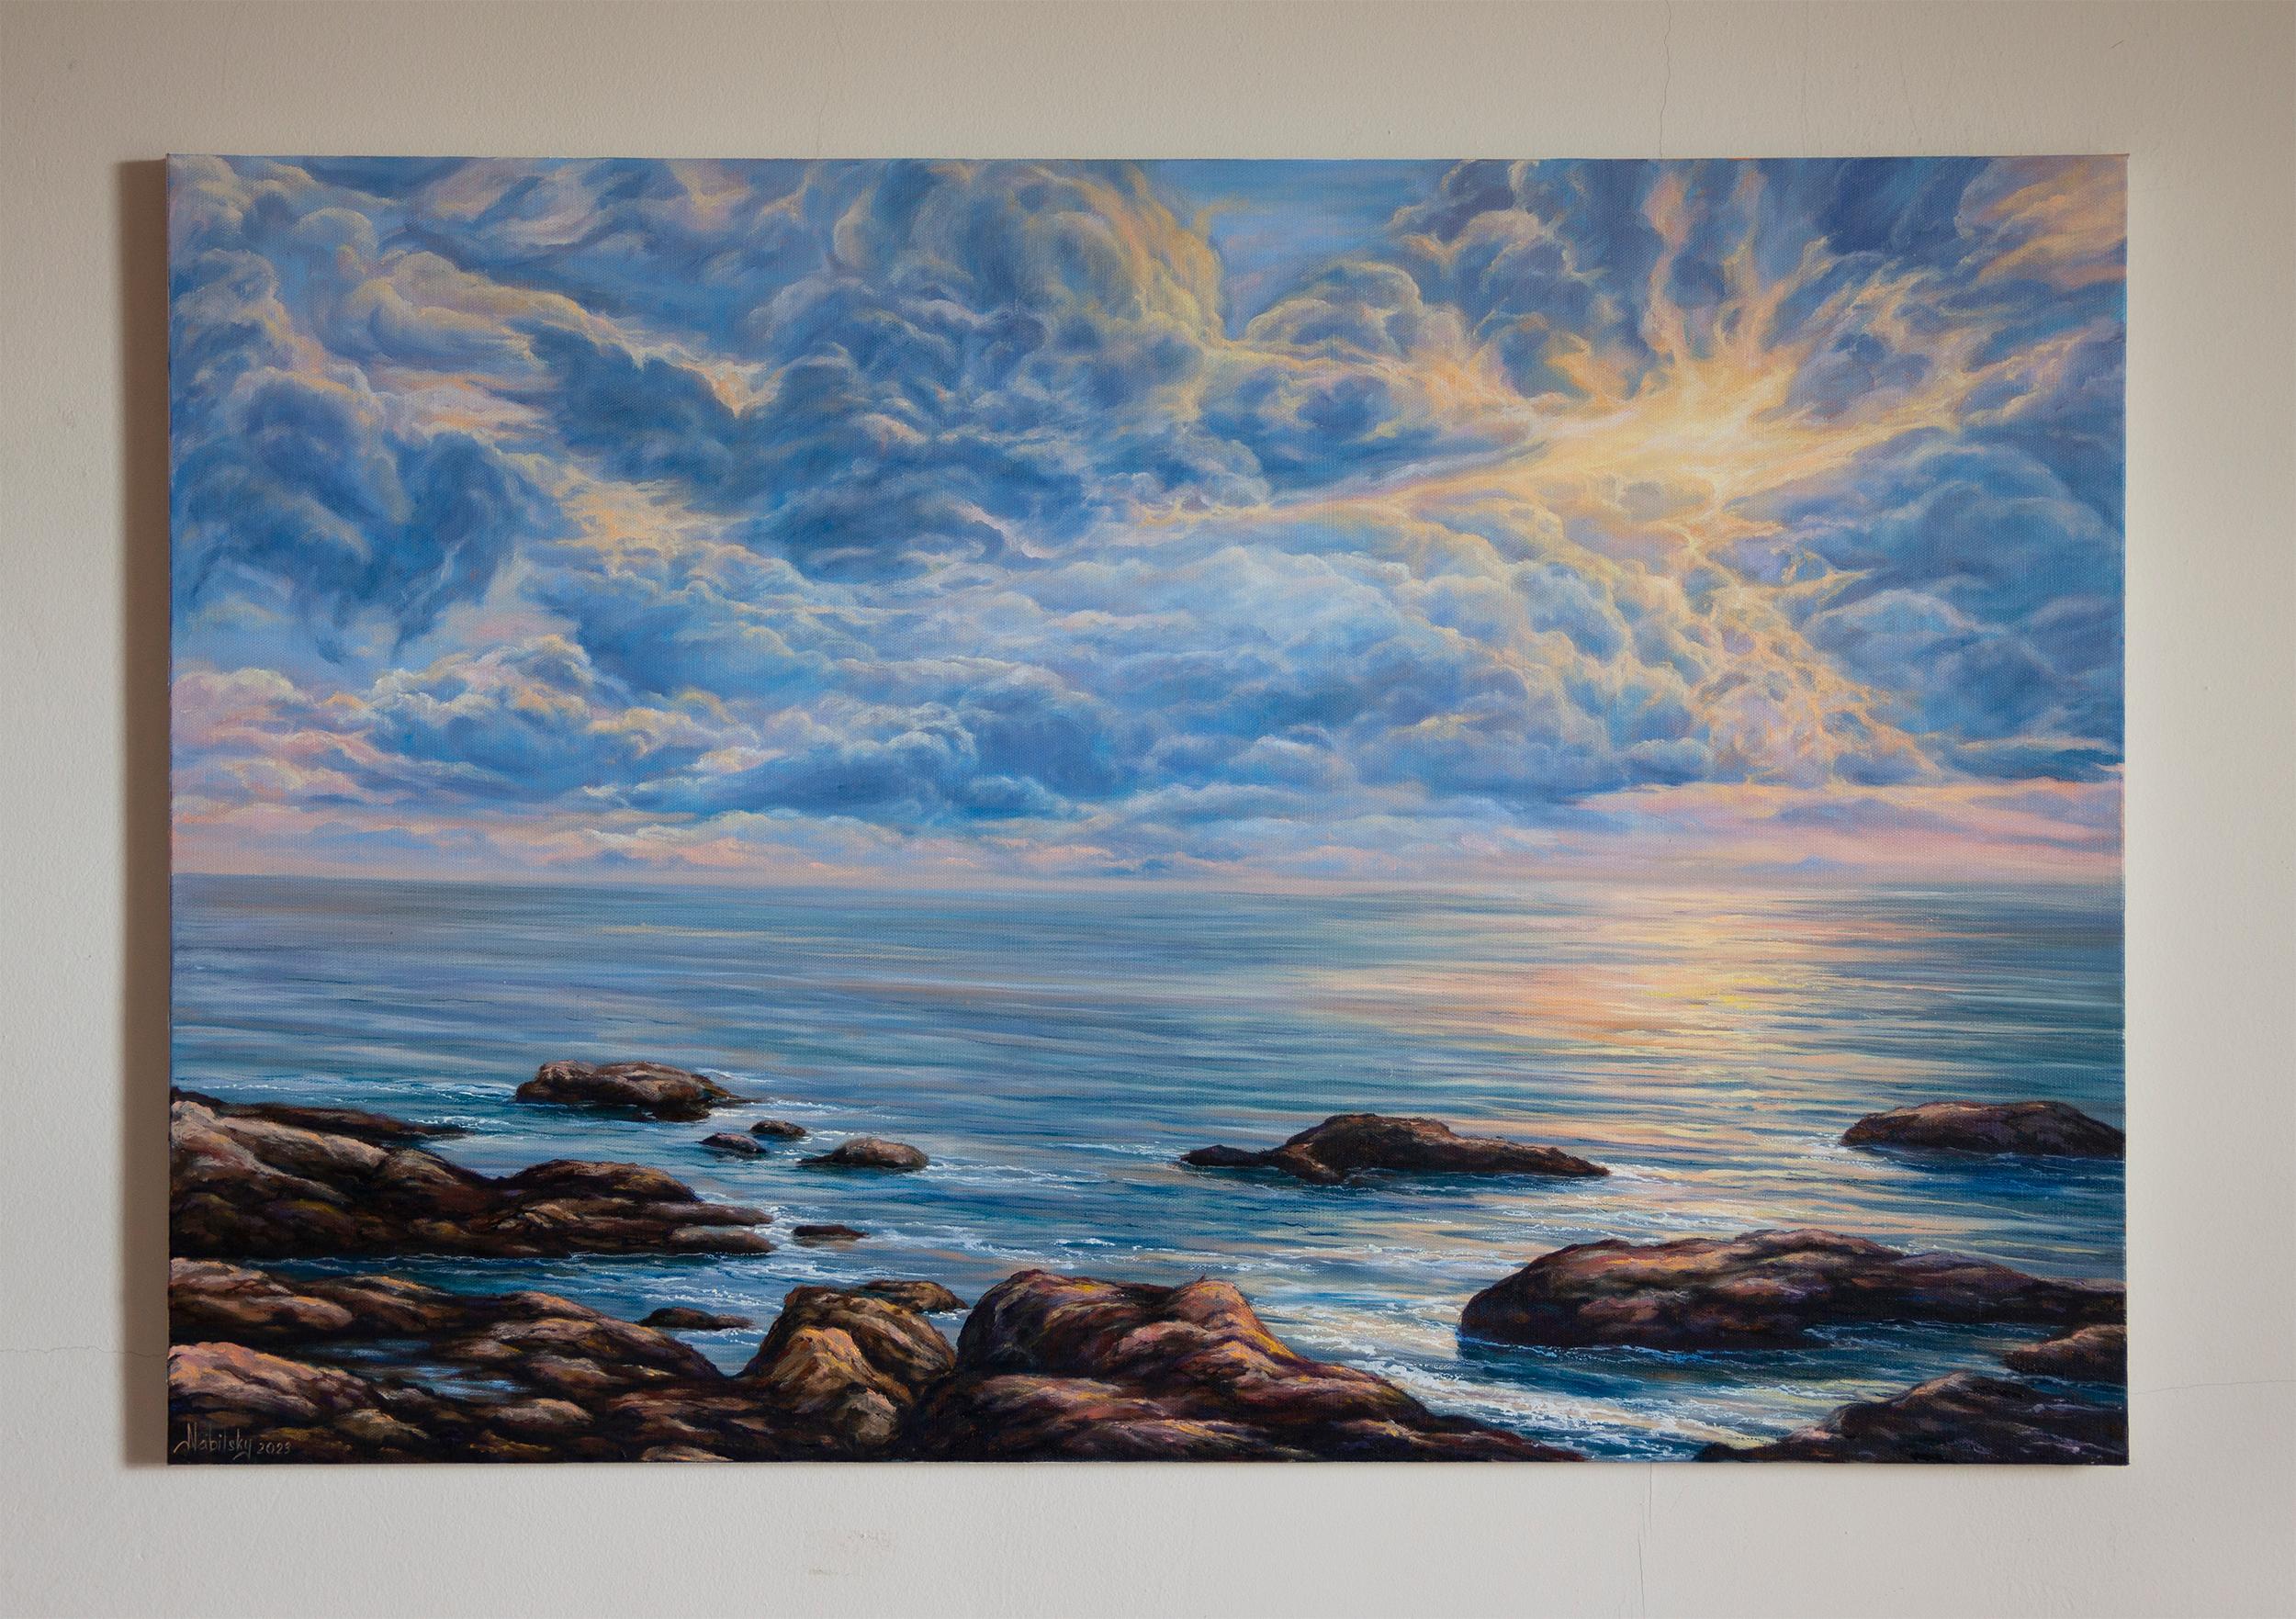 <p>Kommentare der Künstlerin<br>Inspiriert vom Meer und den faszinierenden Momenten des Sonnenaufgangs, fängt die Künstlerin Olena Nabilsky das strahlende Leuchten der Wolken ein. Der ruhige Ozean, der alles in seinem Glanz einhüllt, spiegelt die